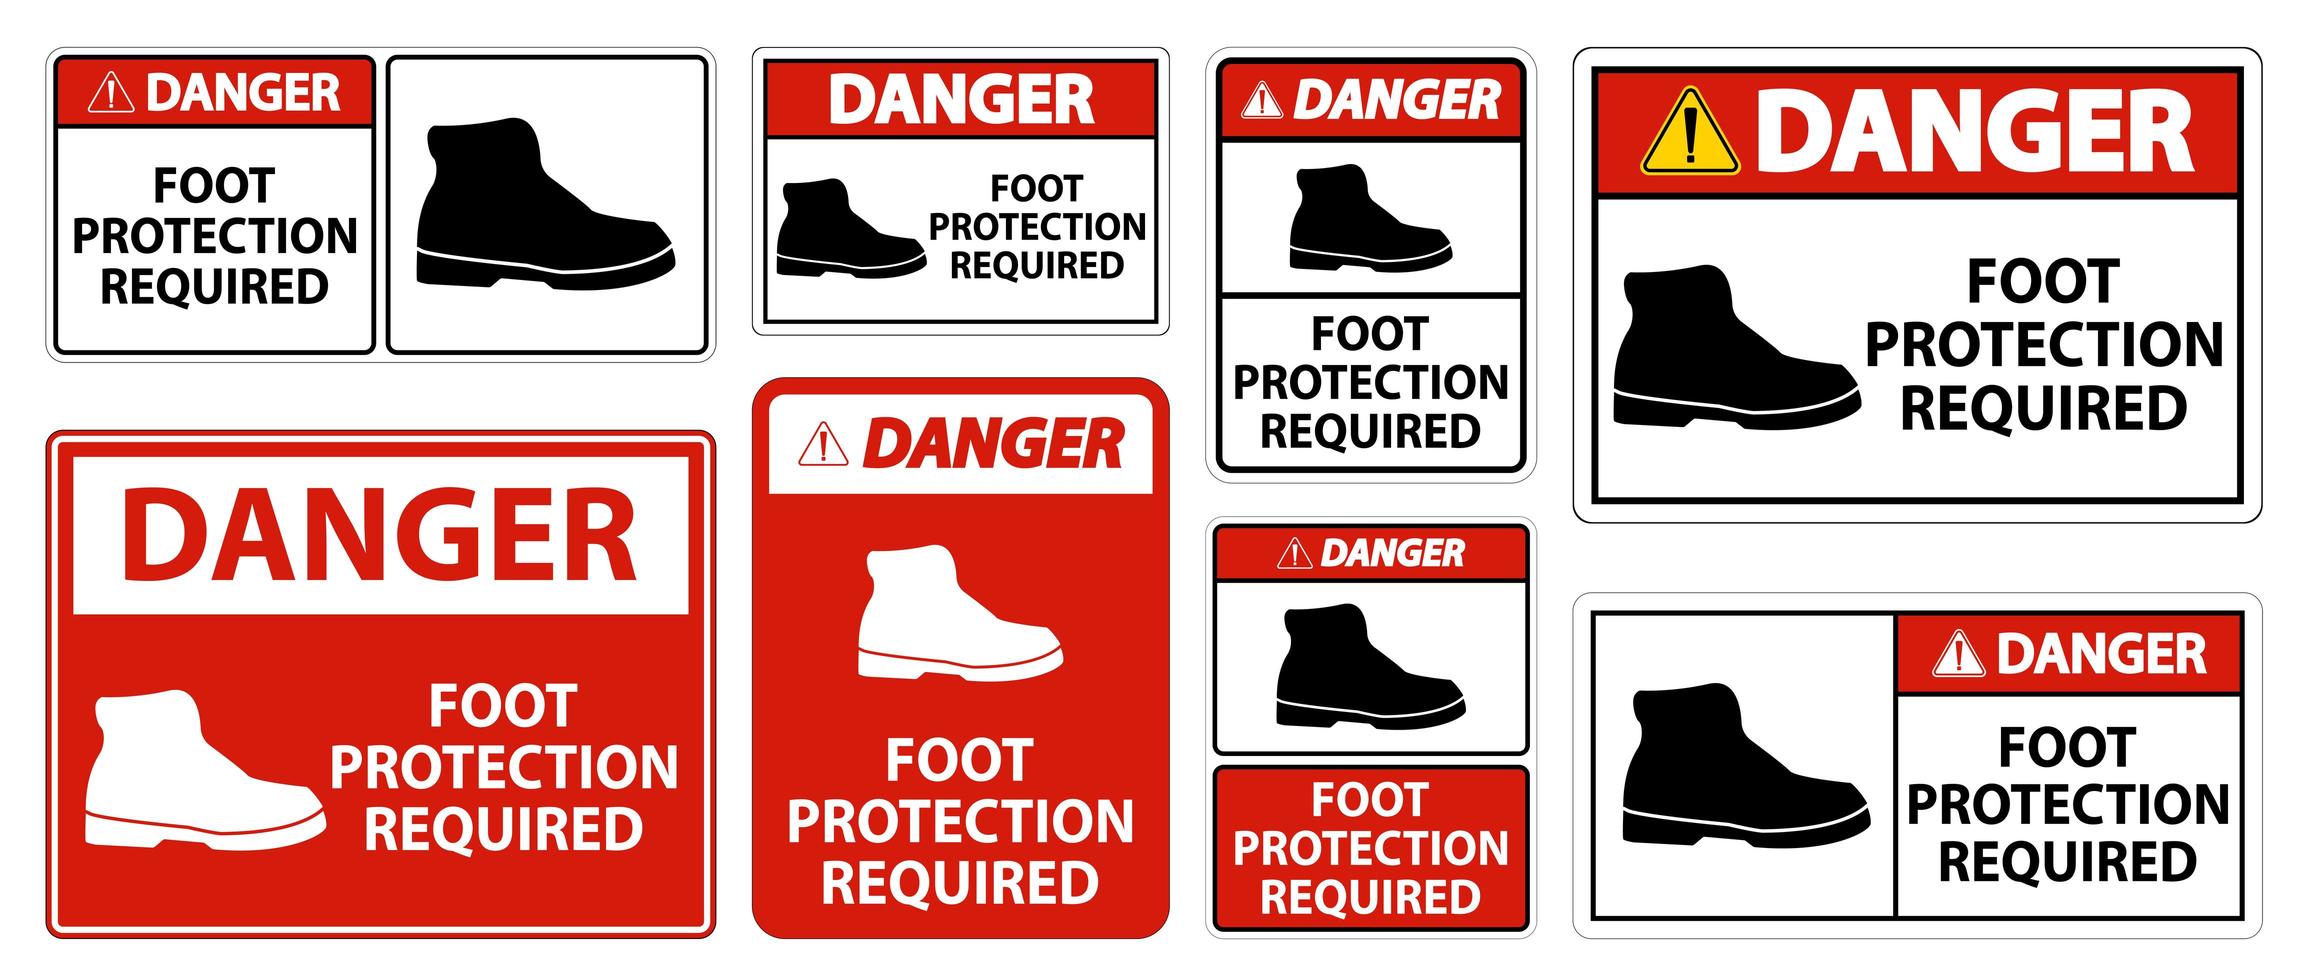 se requiere protección del pie peligro símbolo de la pared signo vector